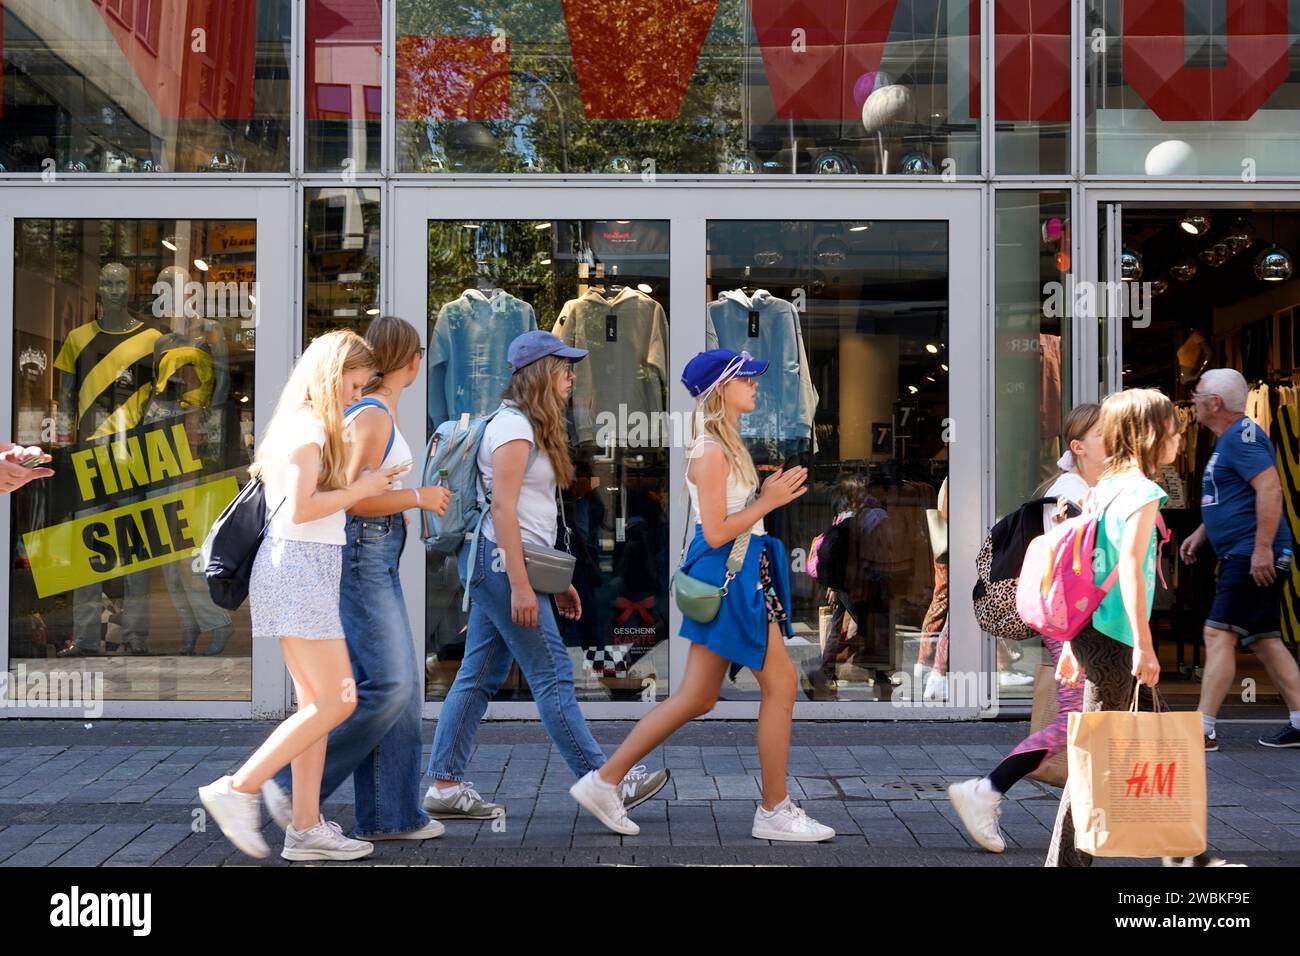 Germania, Renania settentrionale-Vestfalia, Colonia, Hohe Straße, zona pedonale, vetrina, gruppo di ragazze, passeggiate, shopping Foto Stock